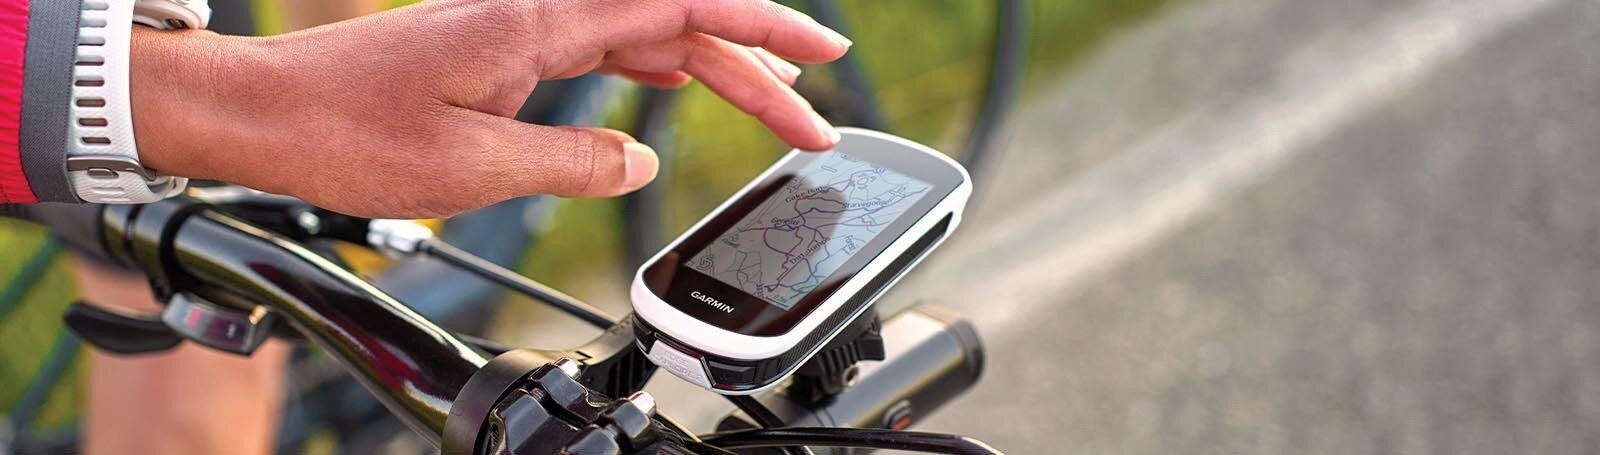 Нові GPS-навігатори Garmin у 2022 році - фото pic_e42a4a19422f9224577ddf357ac8f4a7_1920x9000_1.jpg